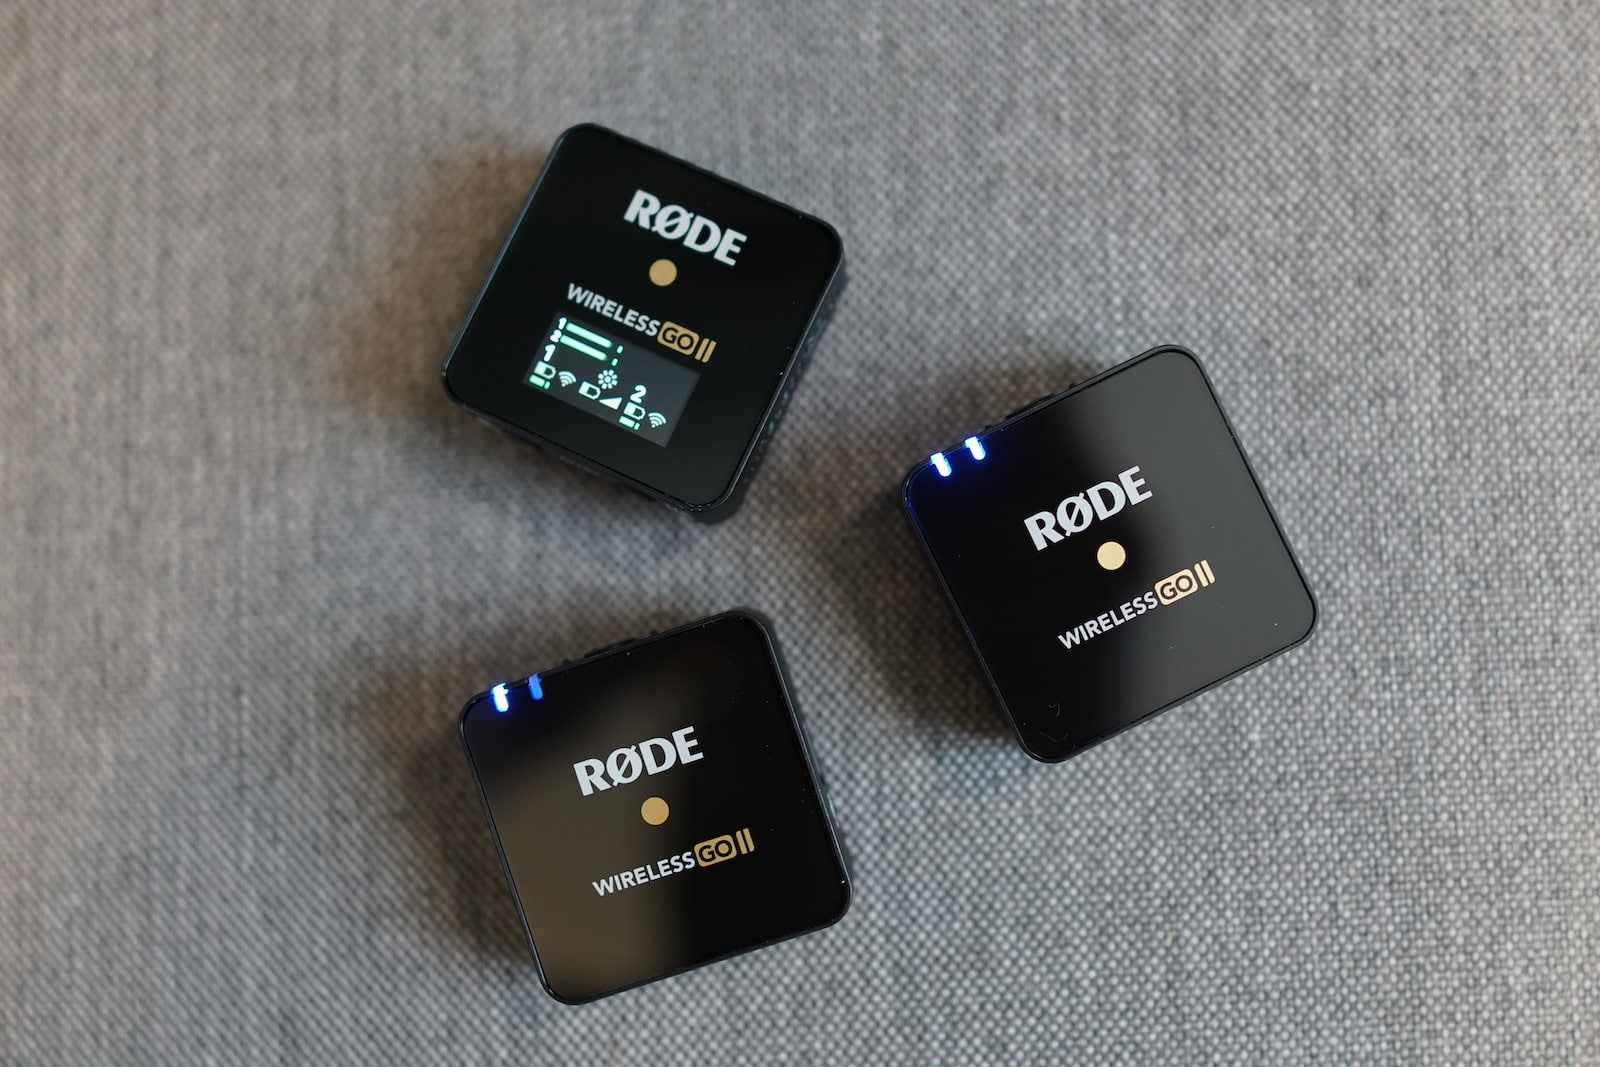 Rode ra mắt microphone không dây Wireless Go II mới với hai microphone và một bộ nhận tín hiệu